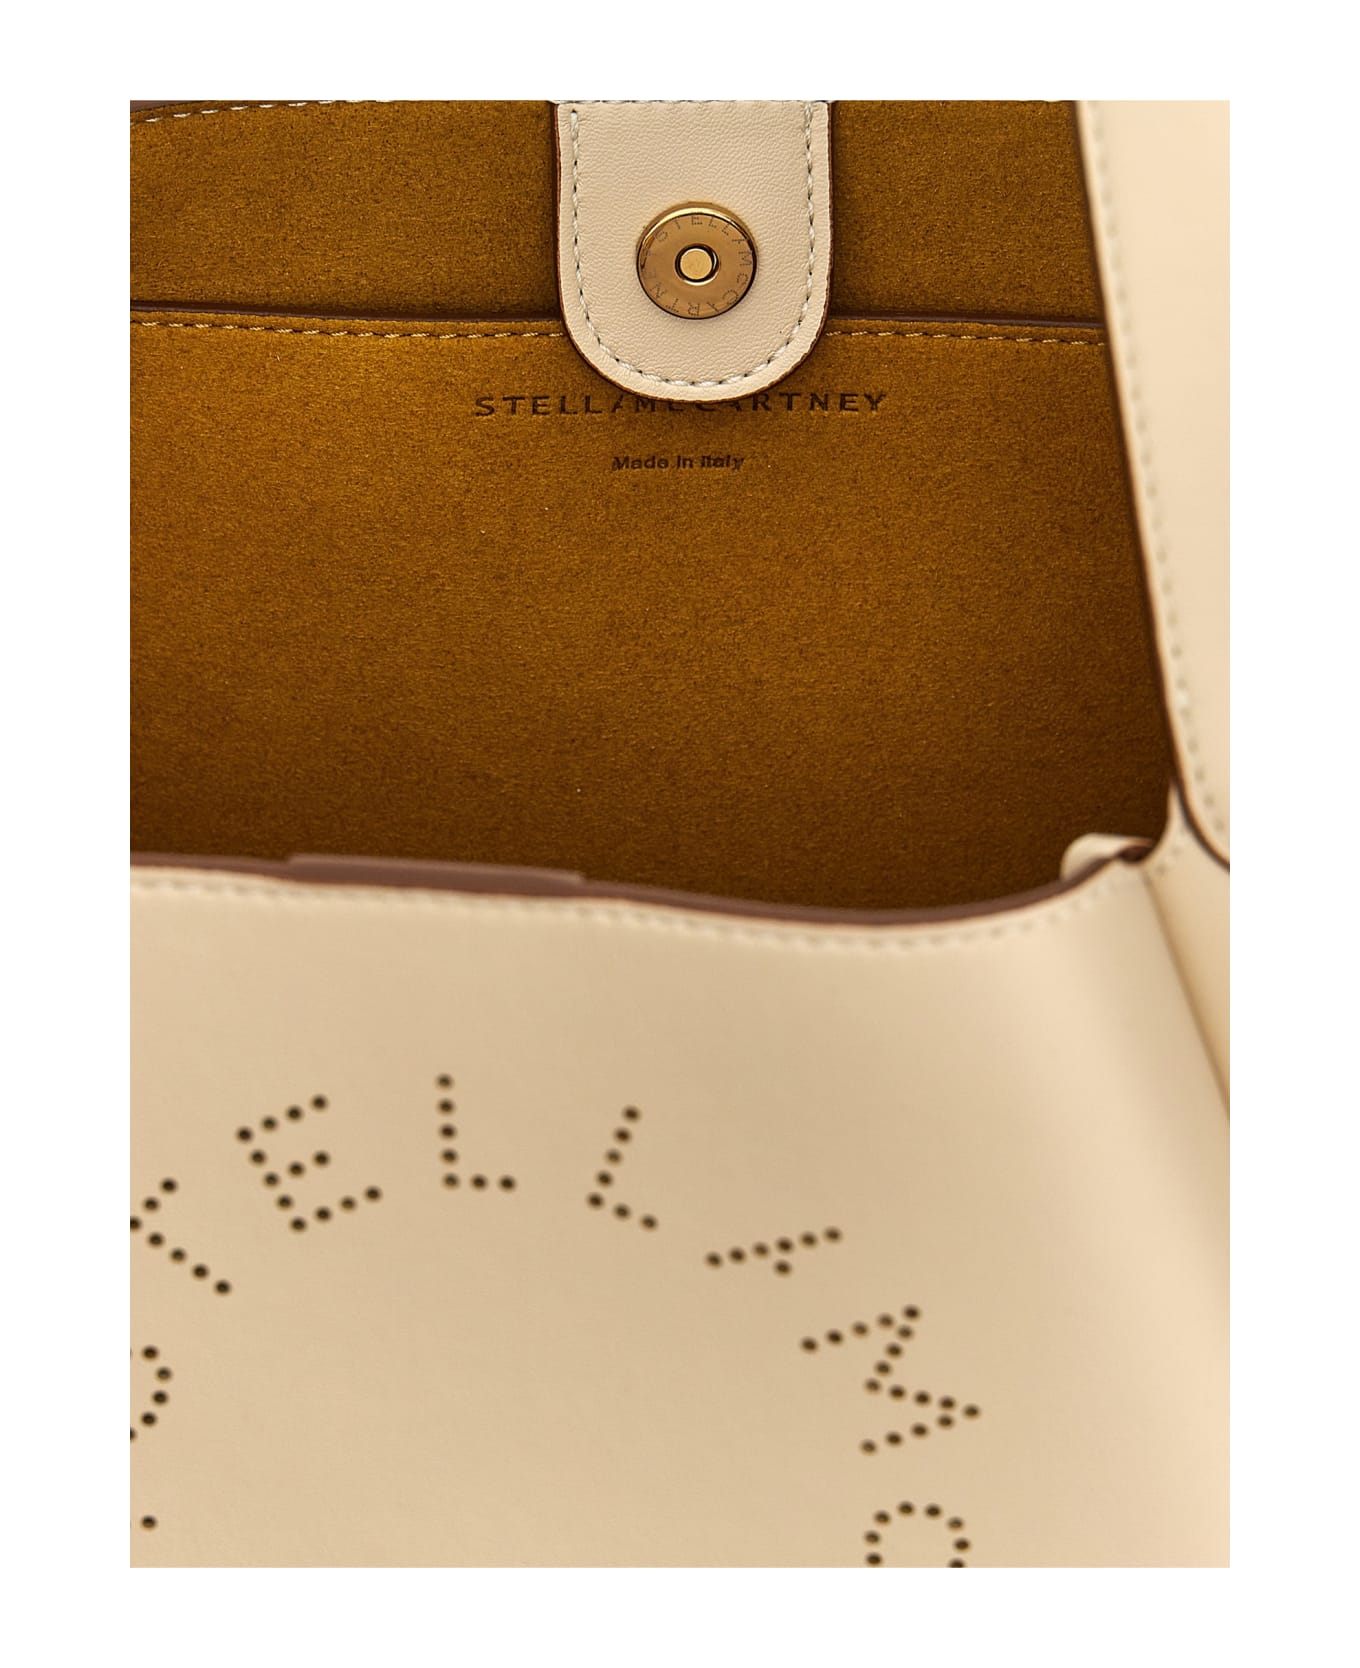 Stella McCartney 'logo' Handbag - White トートバッグ